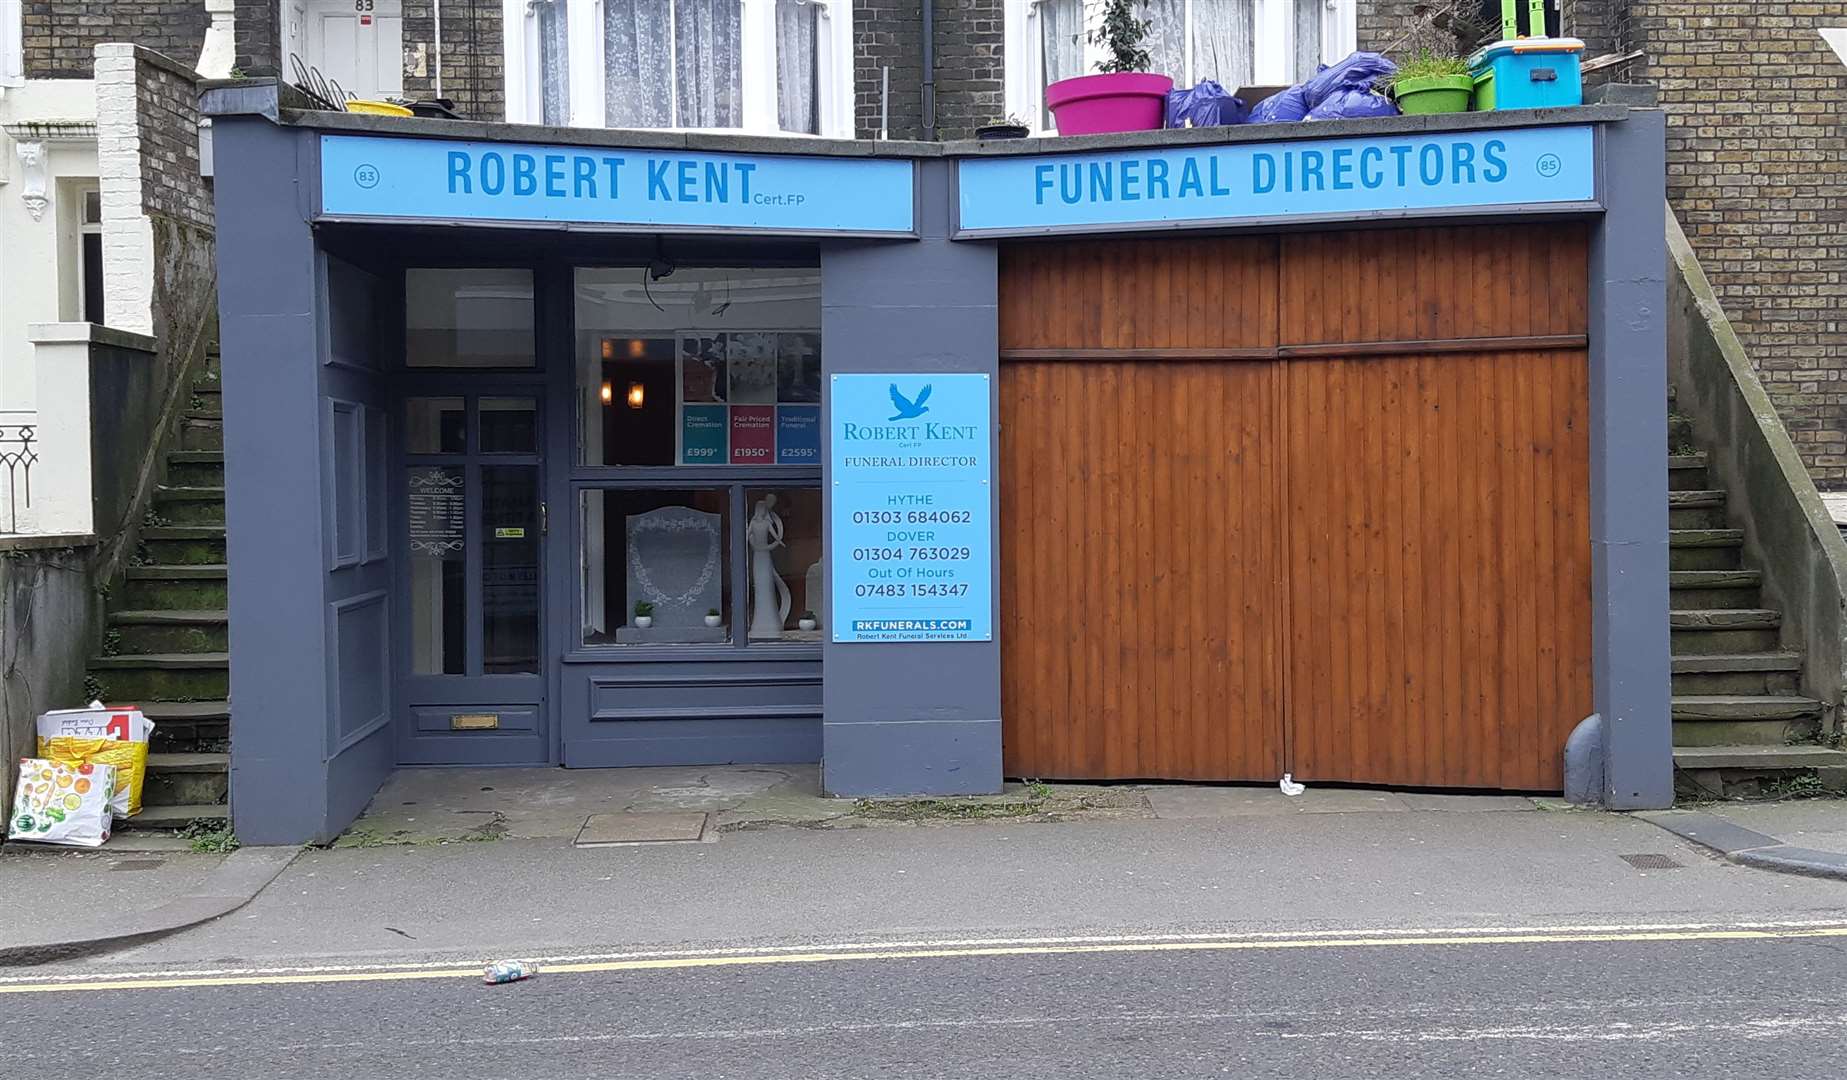 The Dover Robert Kent branch